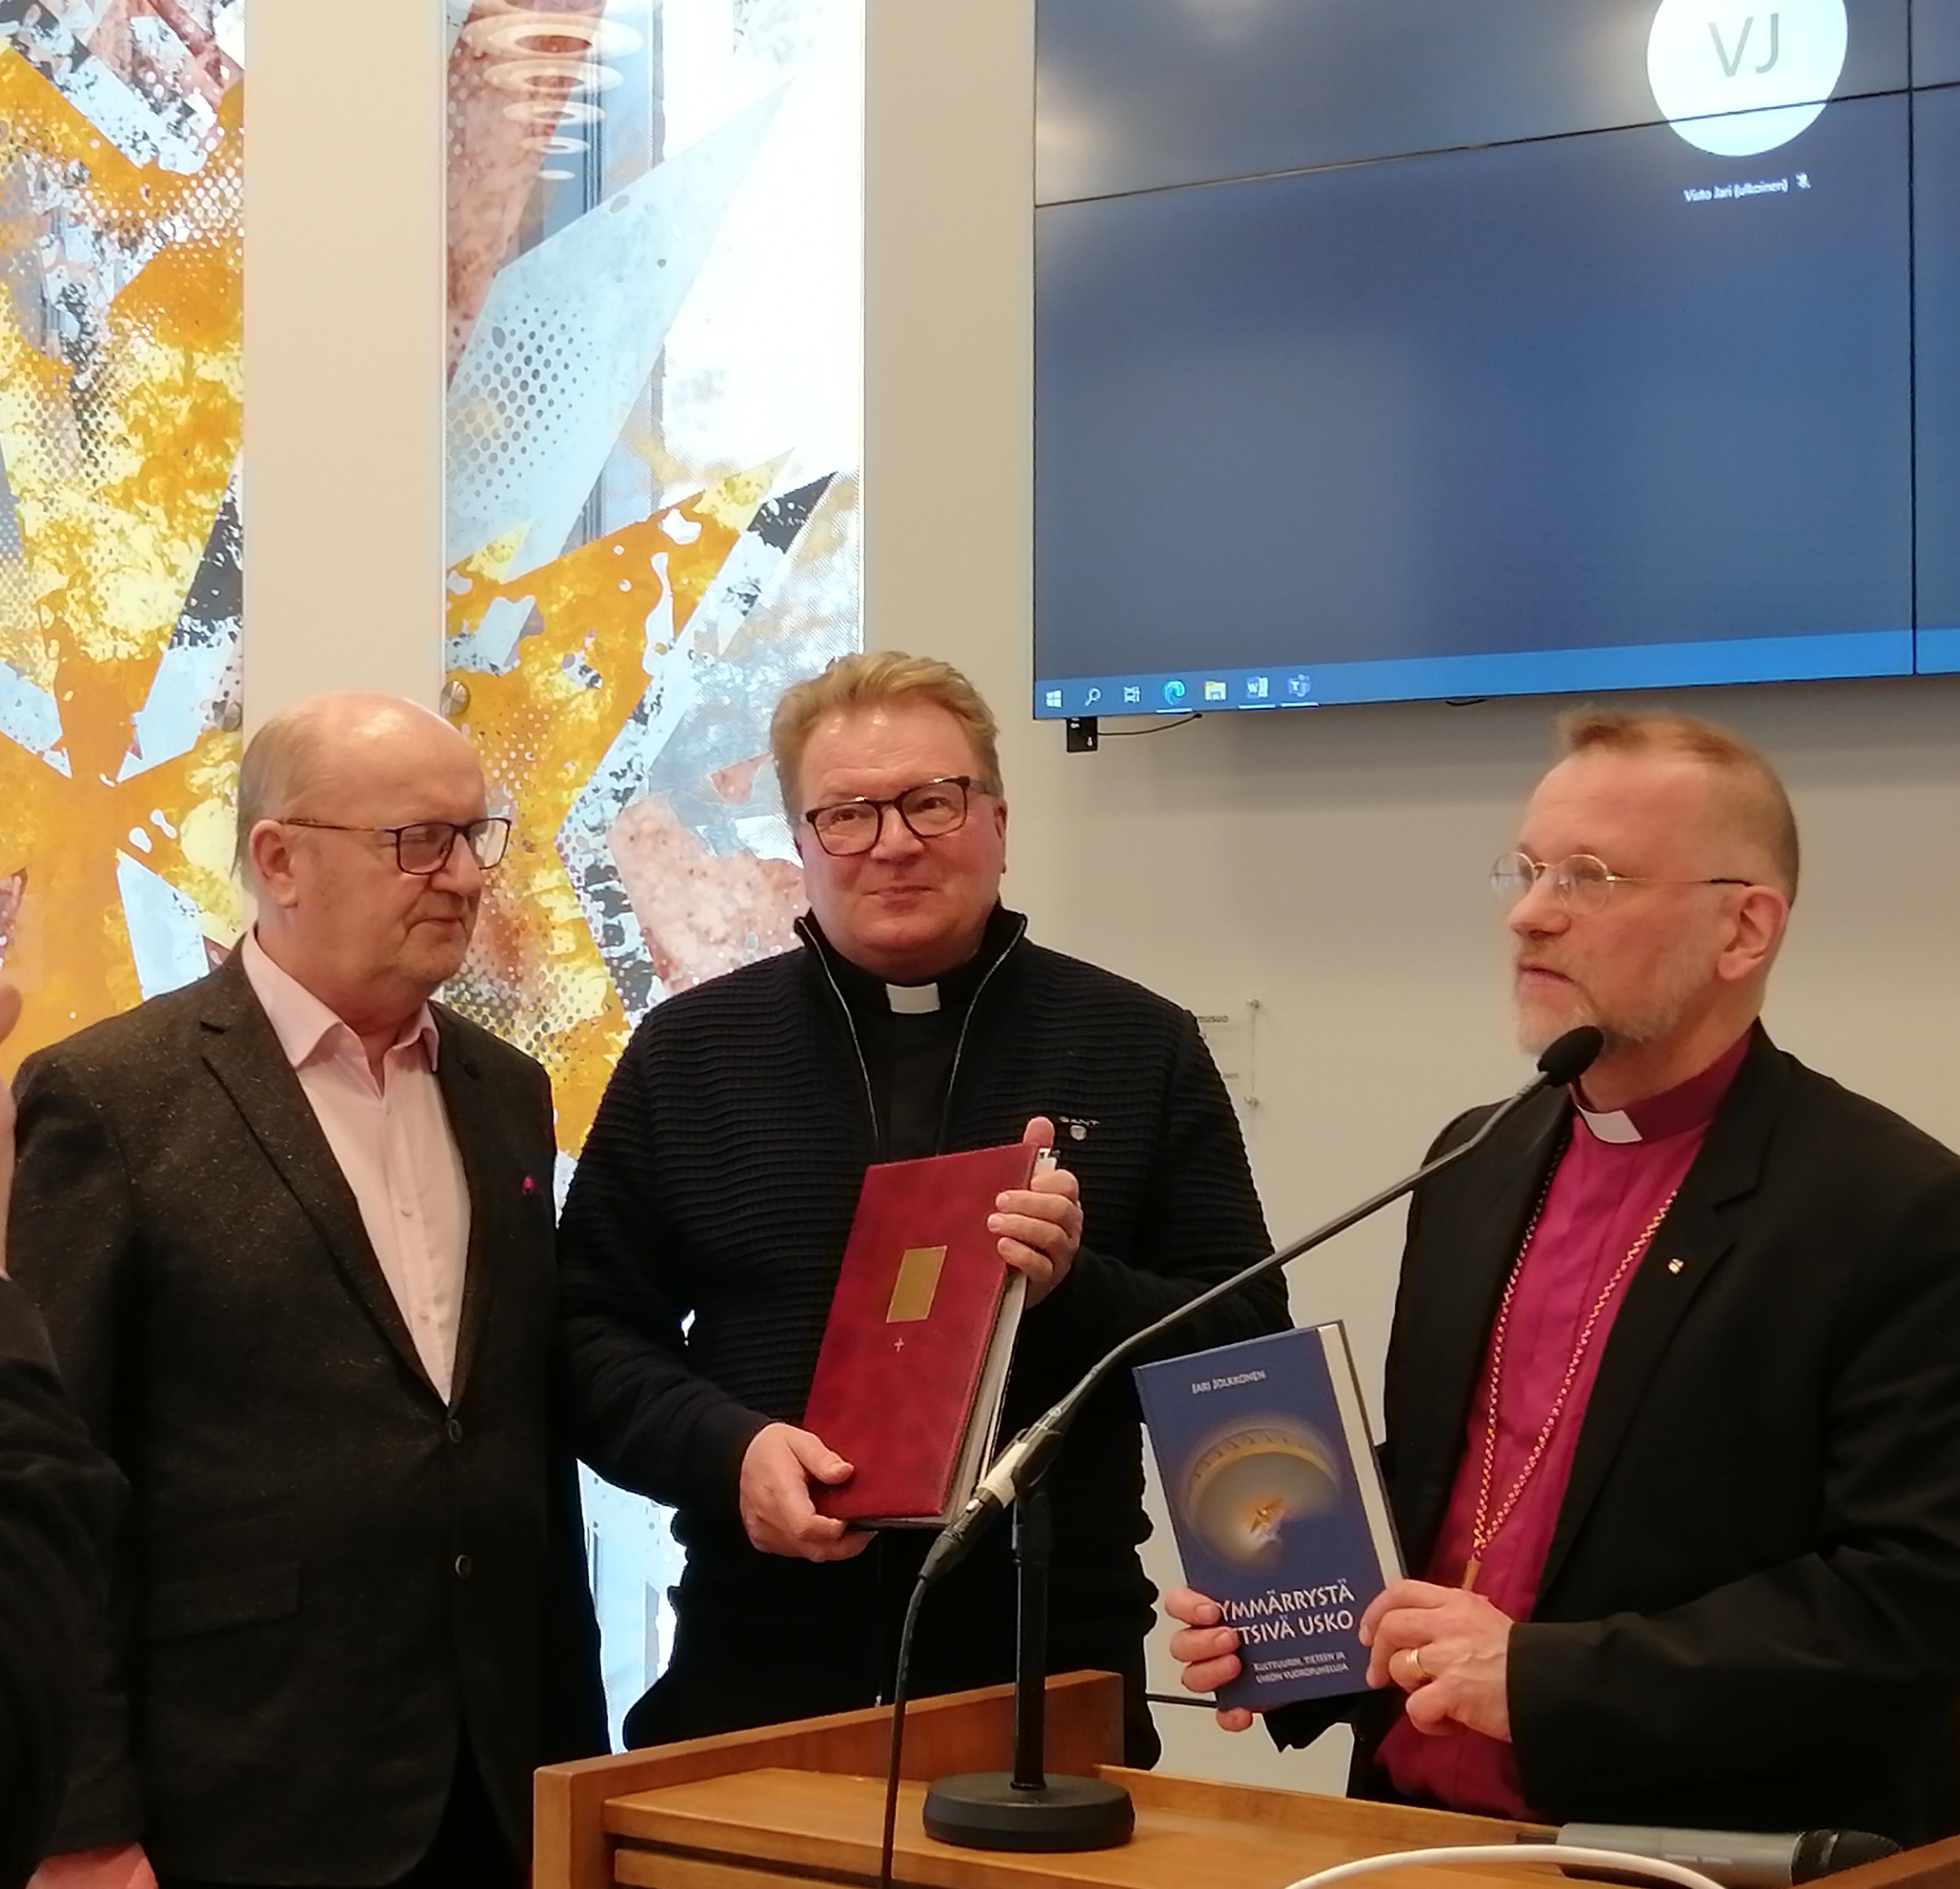 Piispa Jari Jolkkonen ojentamassa ympäristödiplomia seurakuntakeskuksella 25.1.2023